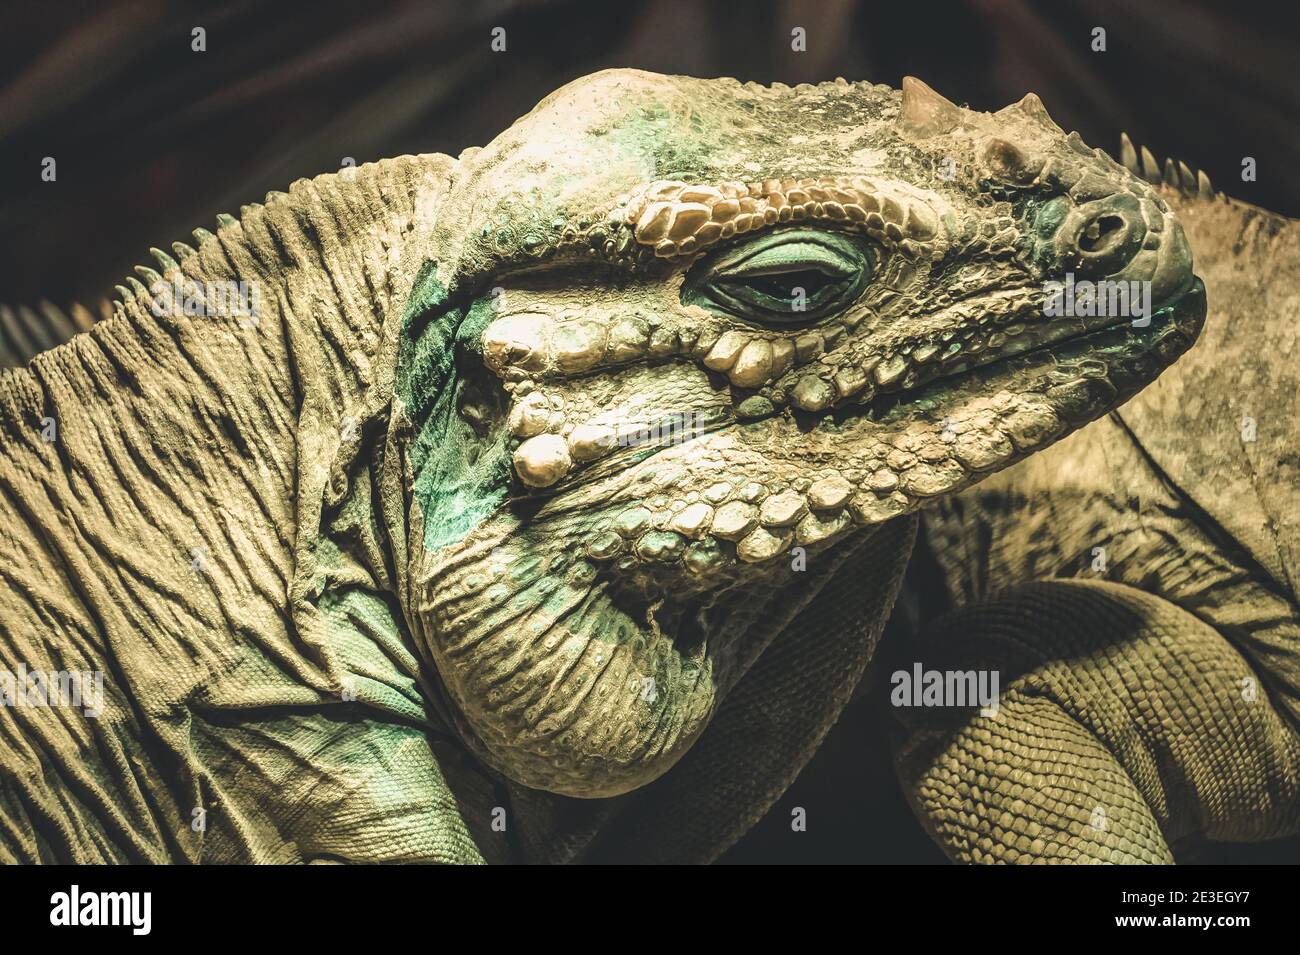 Green iguana lizard - close-up photograph Stock Photo